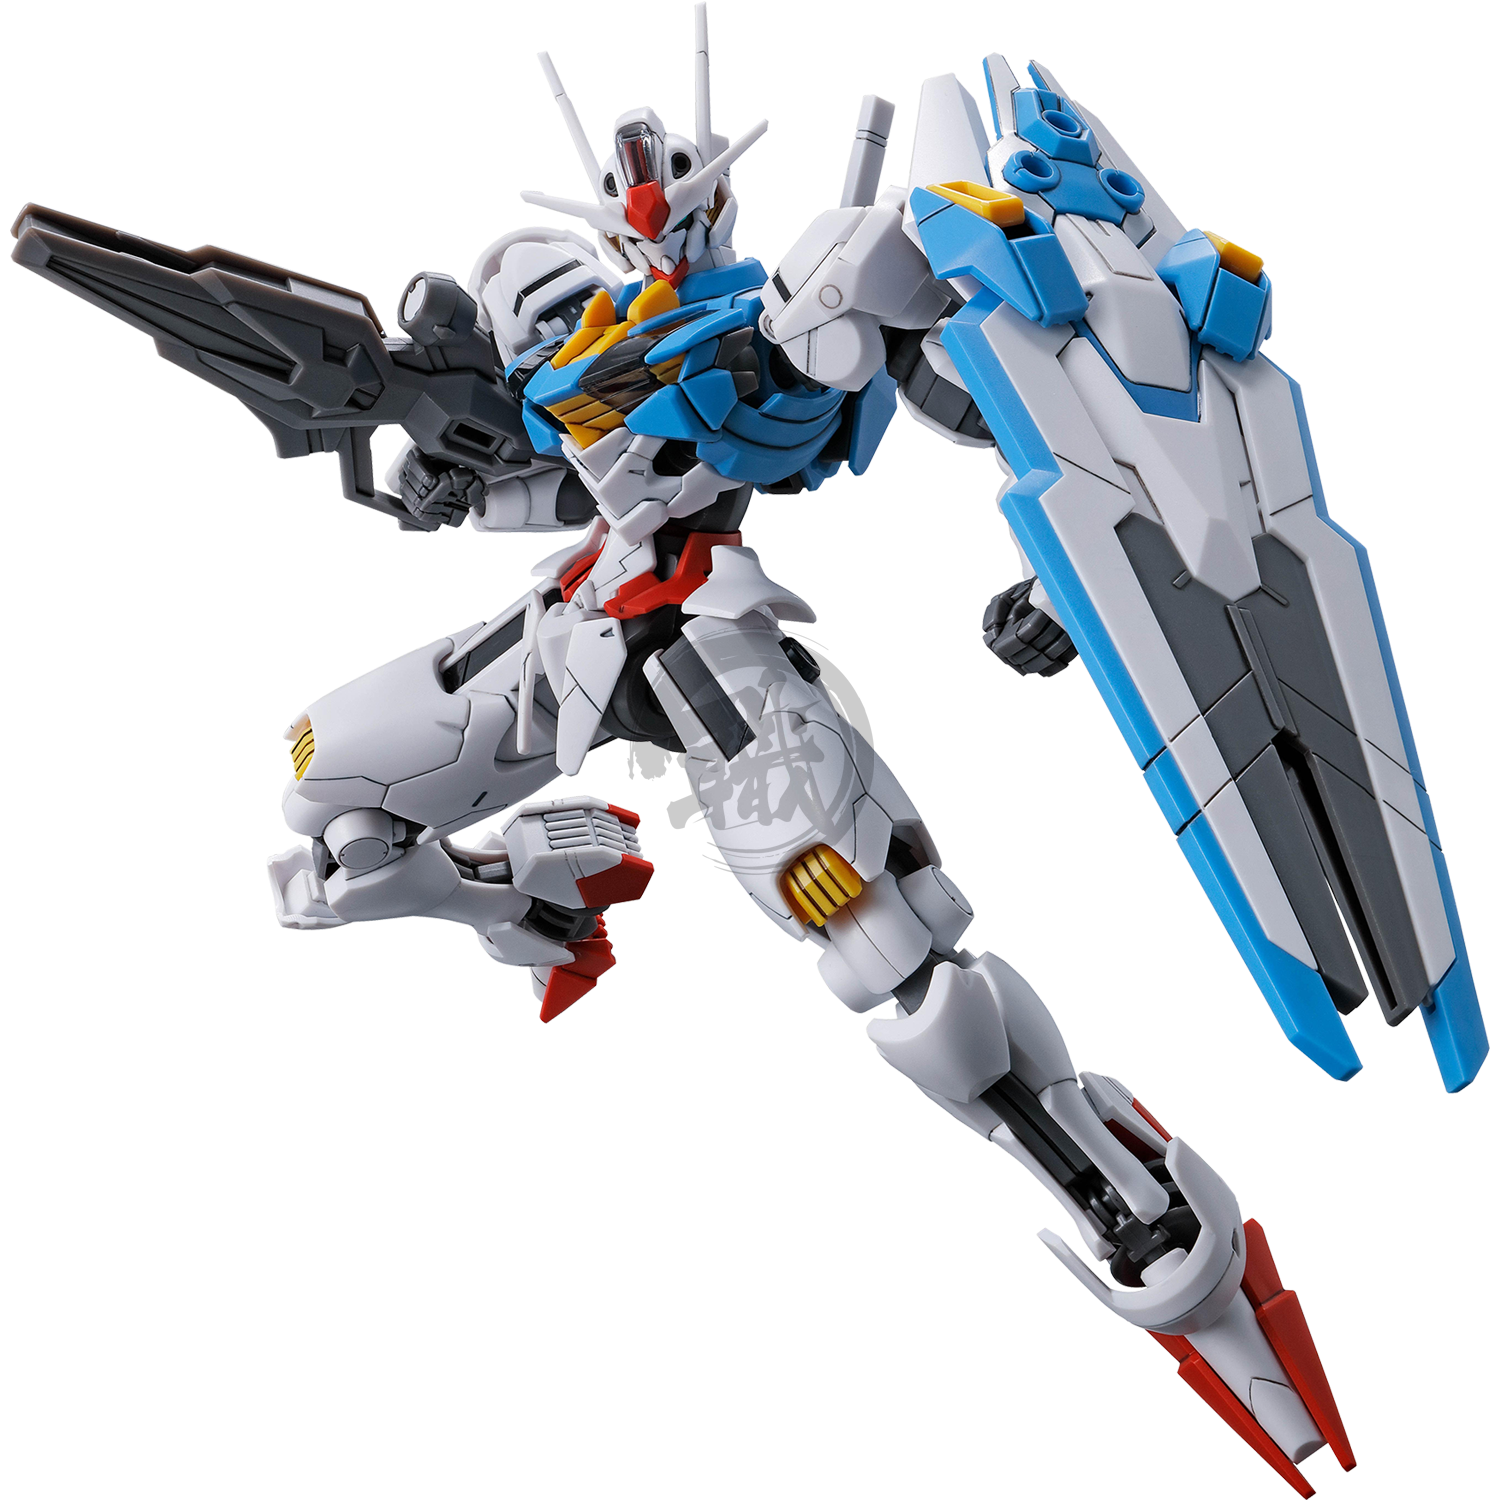 HG Gundam Aerial